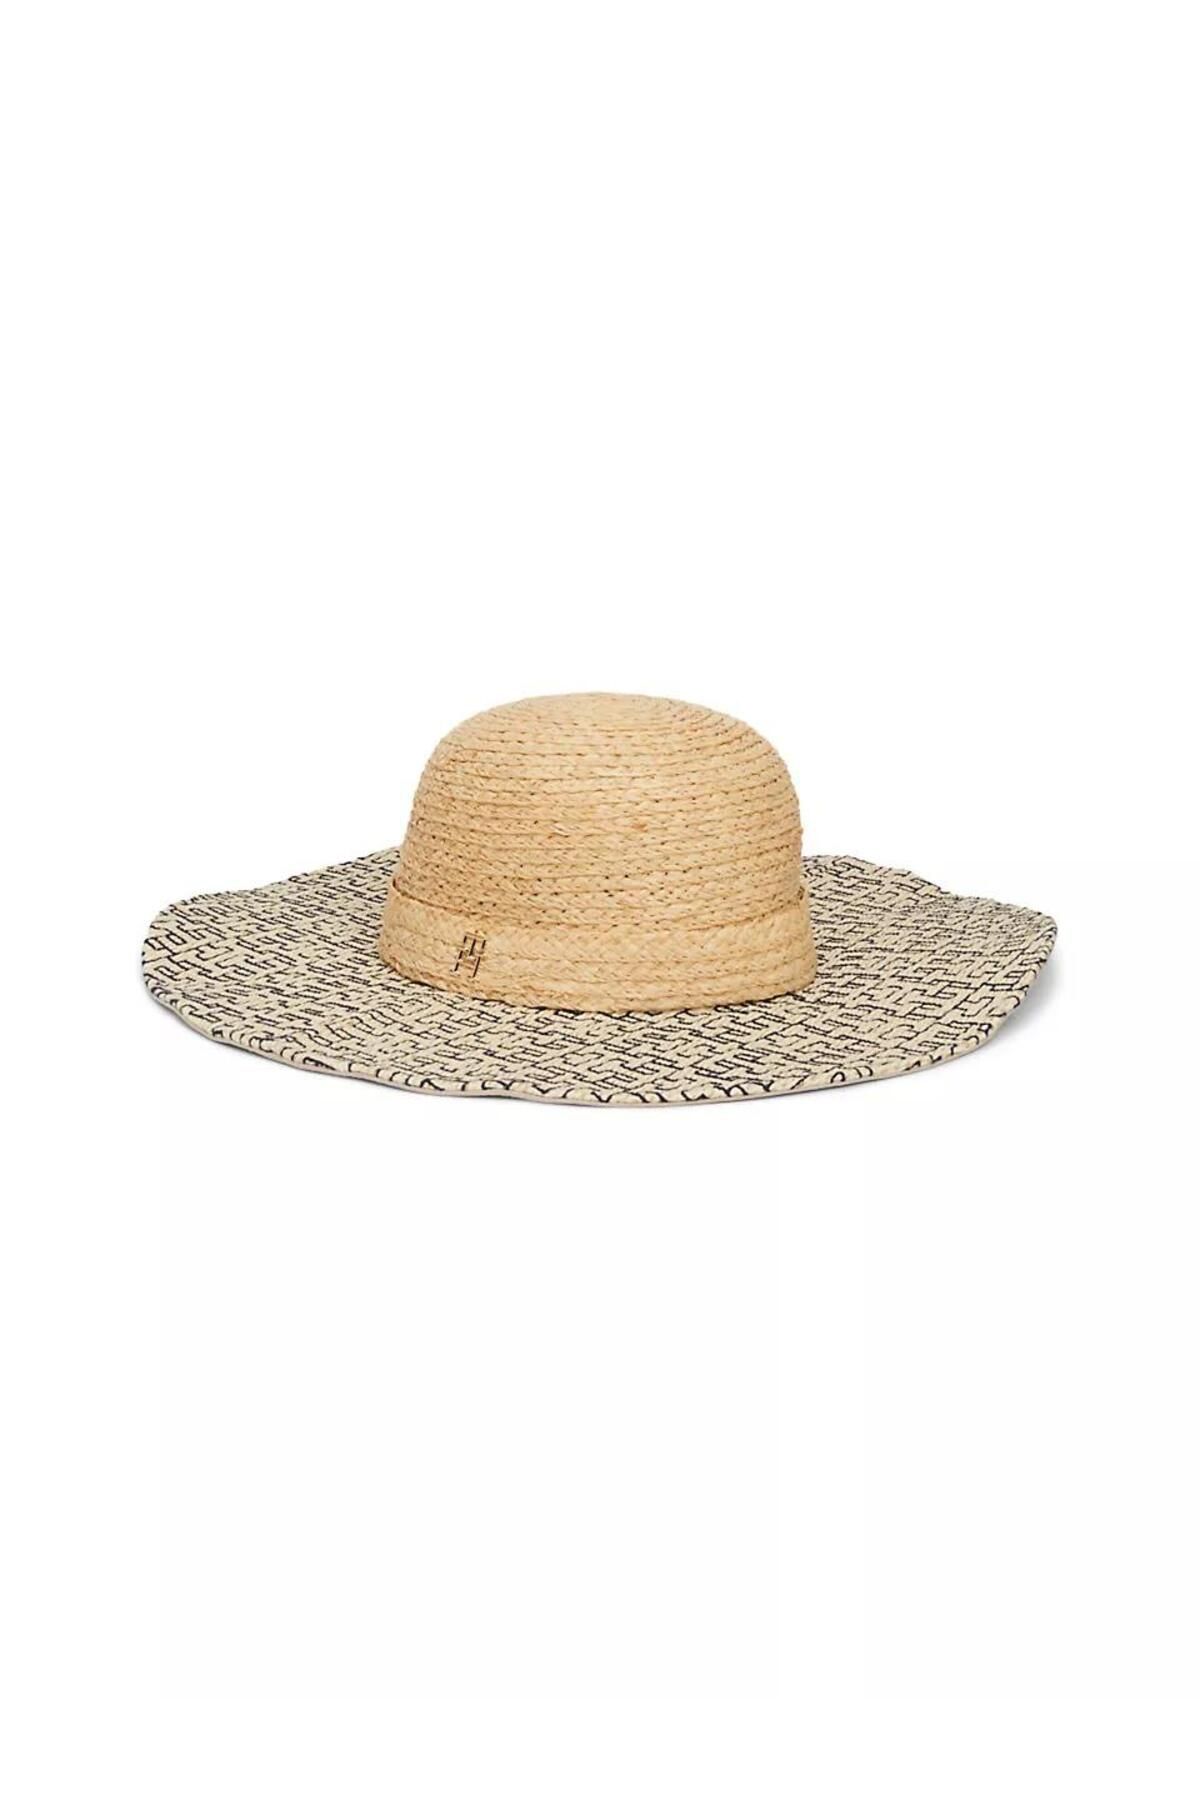 Tommy Hilfiger BEACH SUMMER STRAW HAT